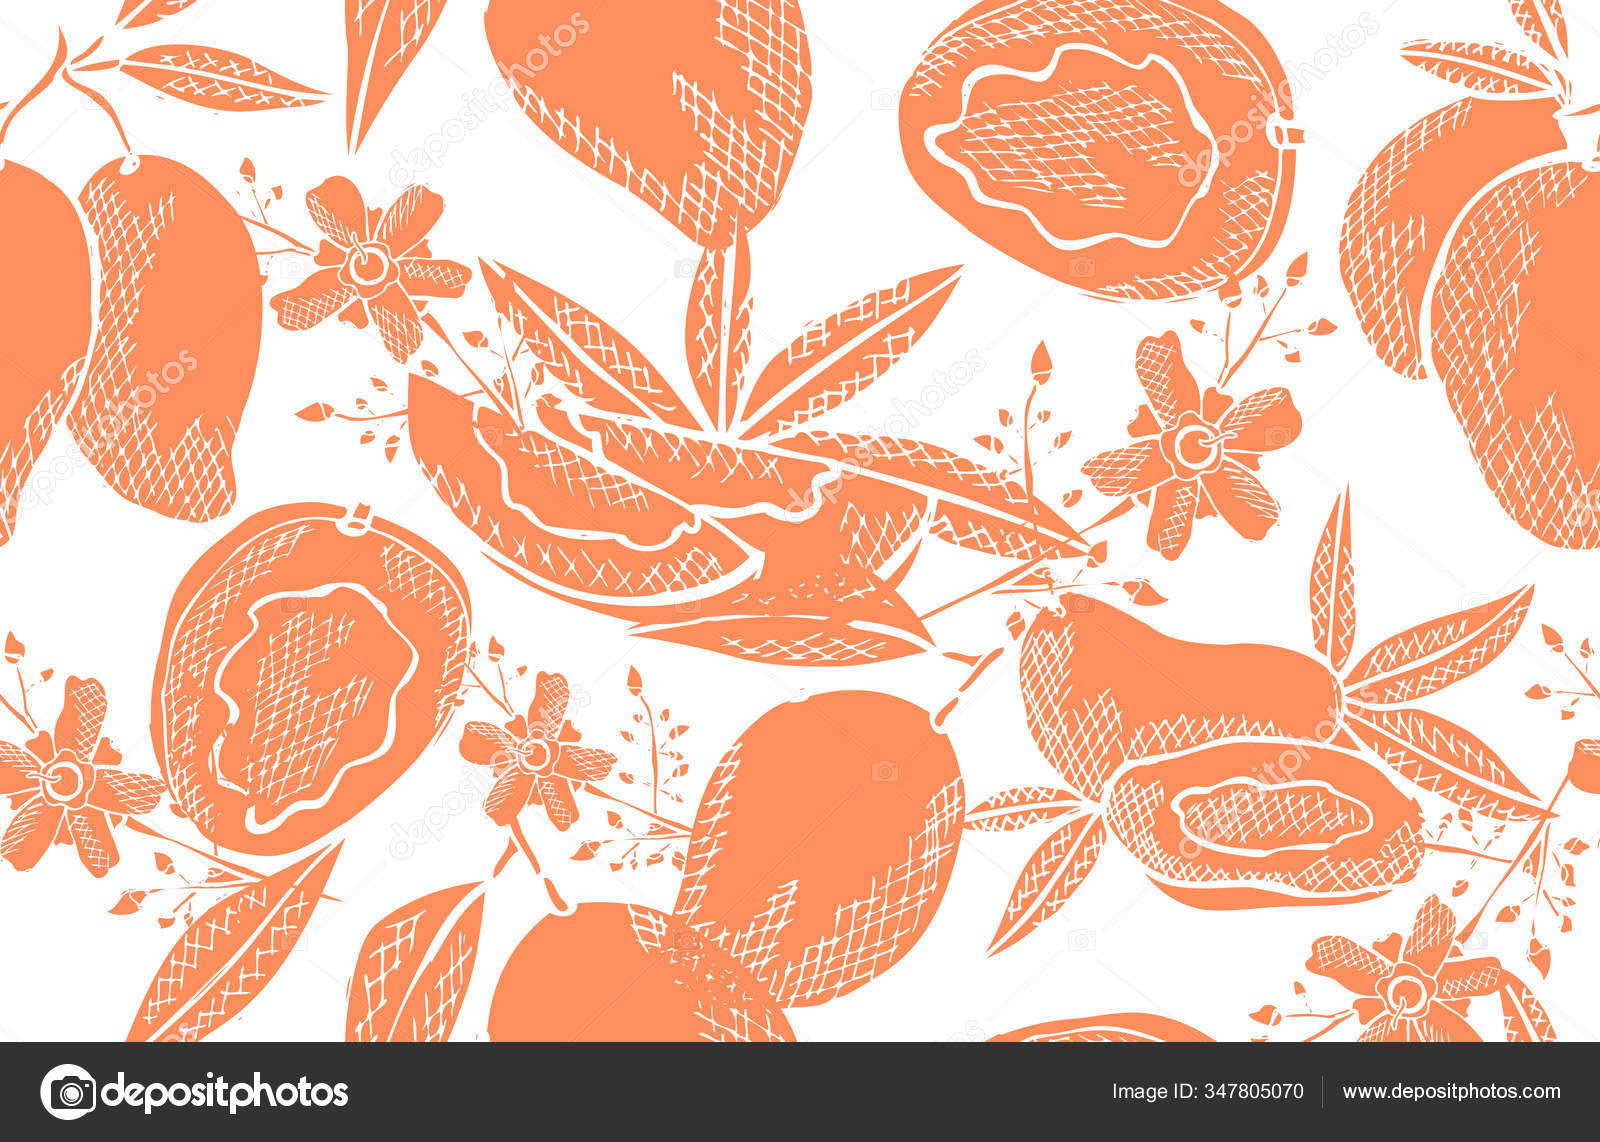 マンゴーフルーツ デザイン要素とエレガントなシームレスパターン 招待状 カード ギフトラップ 壁紙のための果物パターン キッチン ベジタリアンのテーマ ストックベクター C Chantall